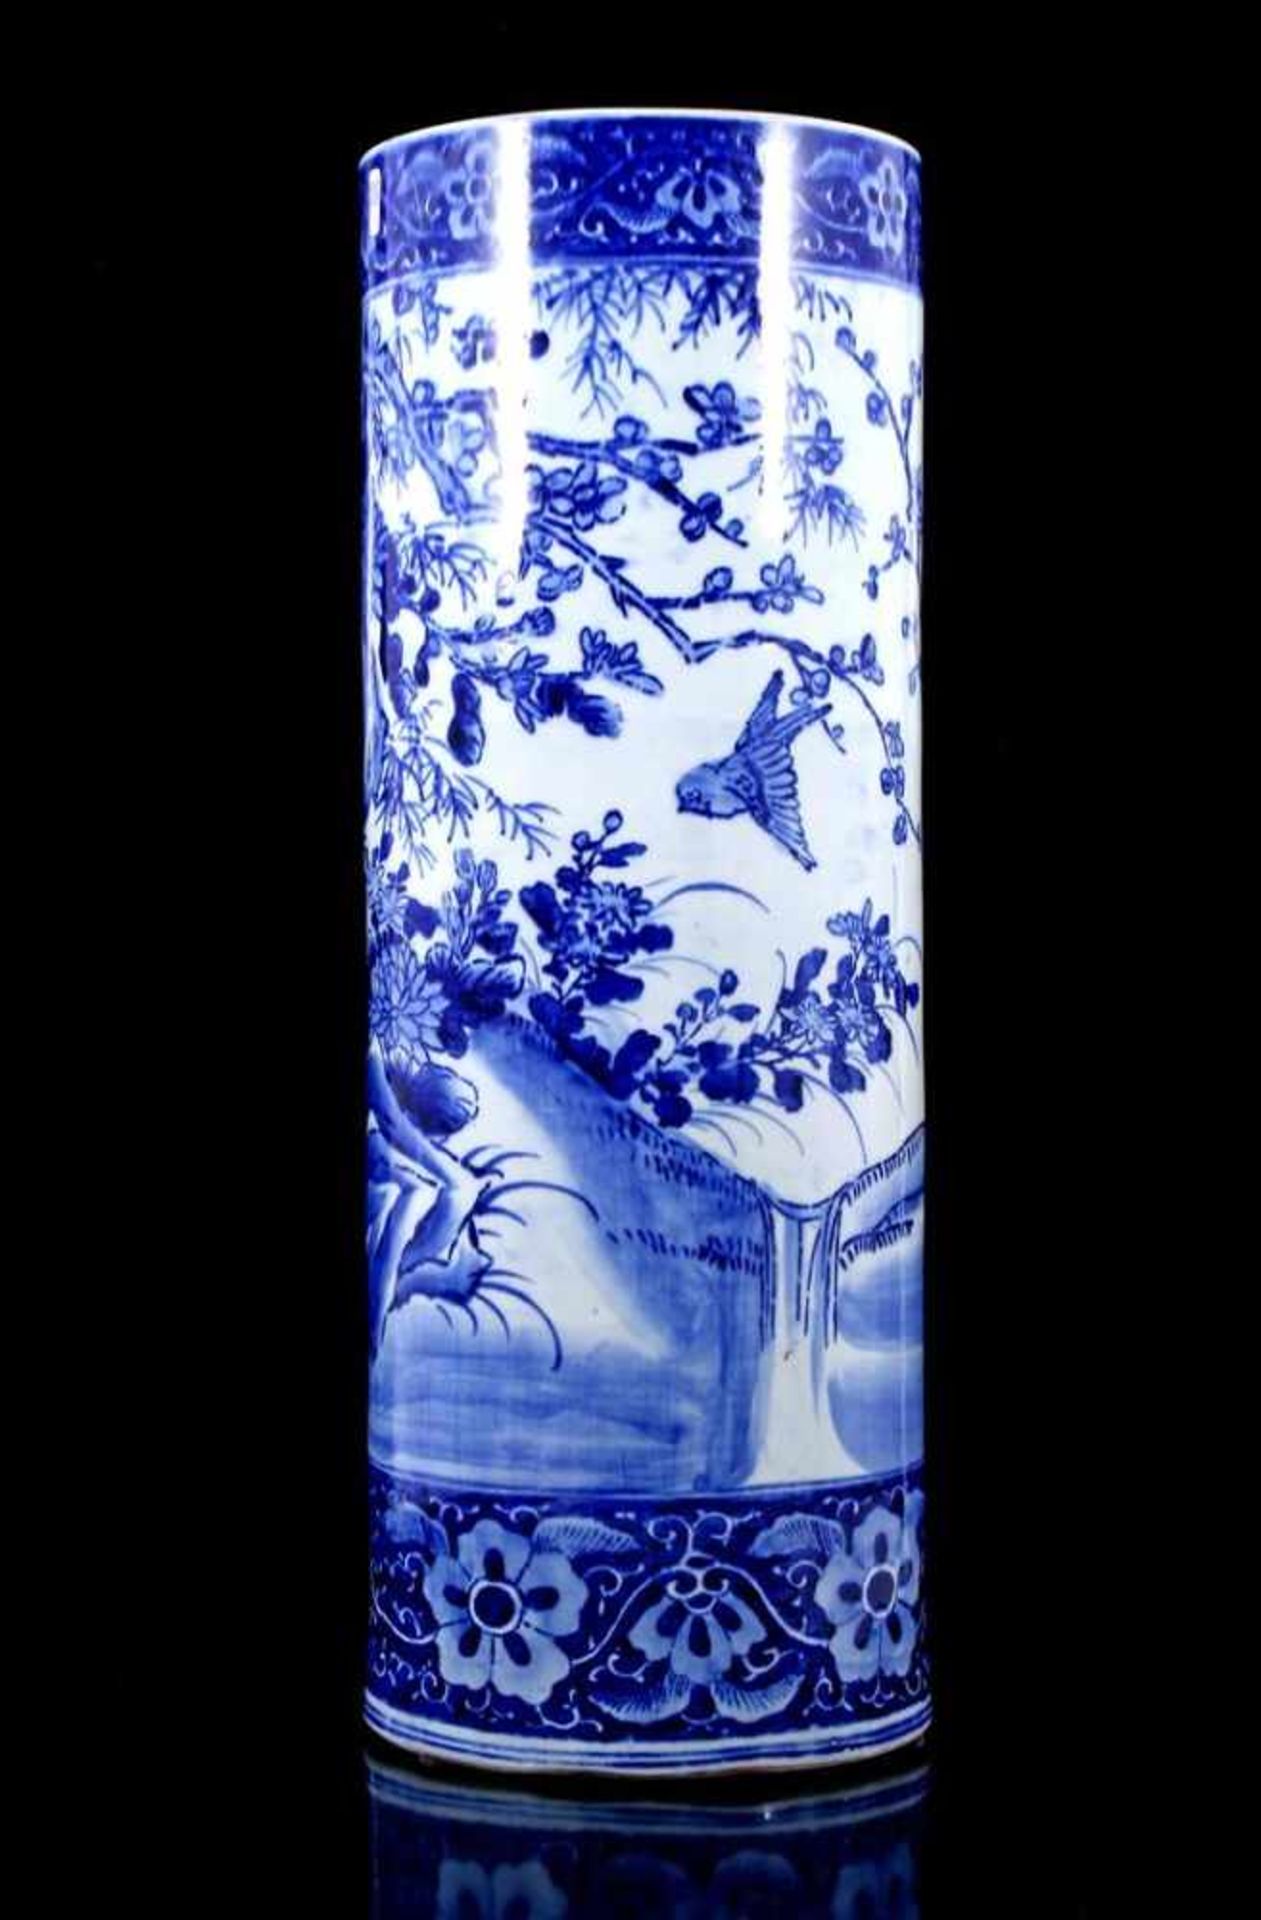 Chinees porseleinen rolvaas met blauw decor van vogels in florale omgeving, 20e eeuw 62 cm hoog, - Bild 2 aus 4